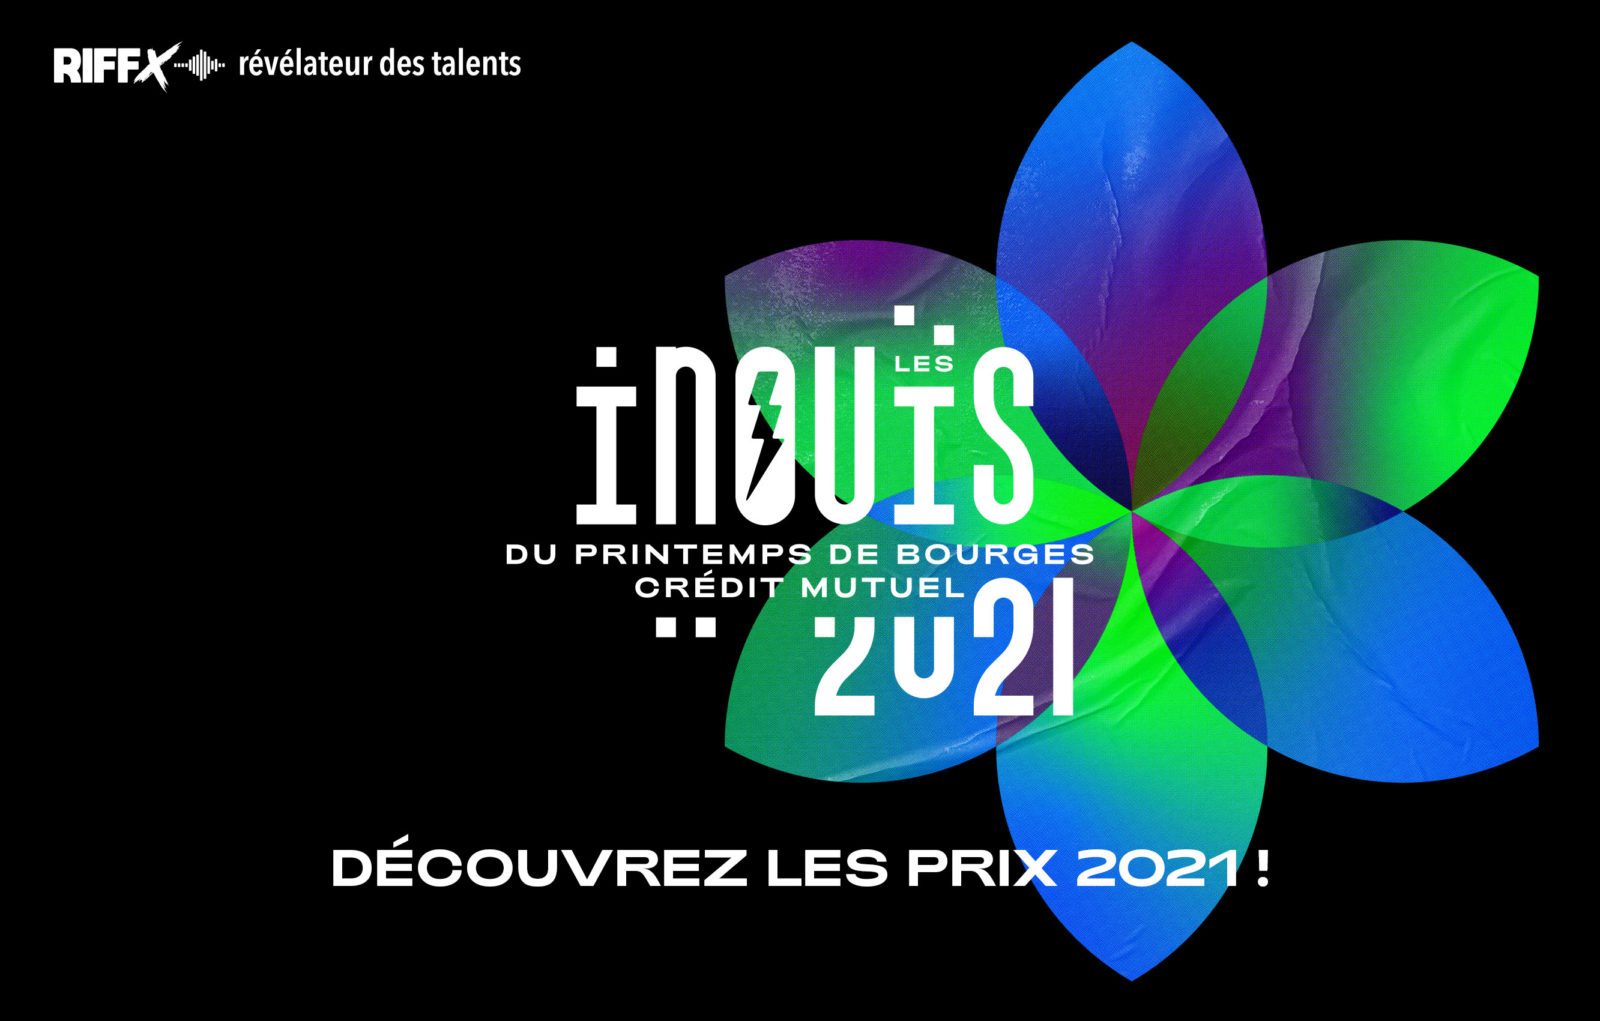 Découvrez les Prix iNOUïS 2021 !